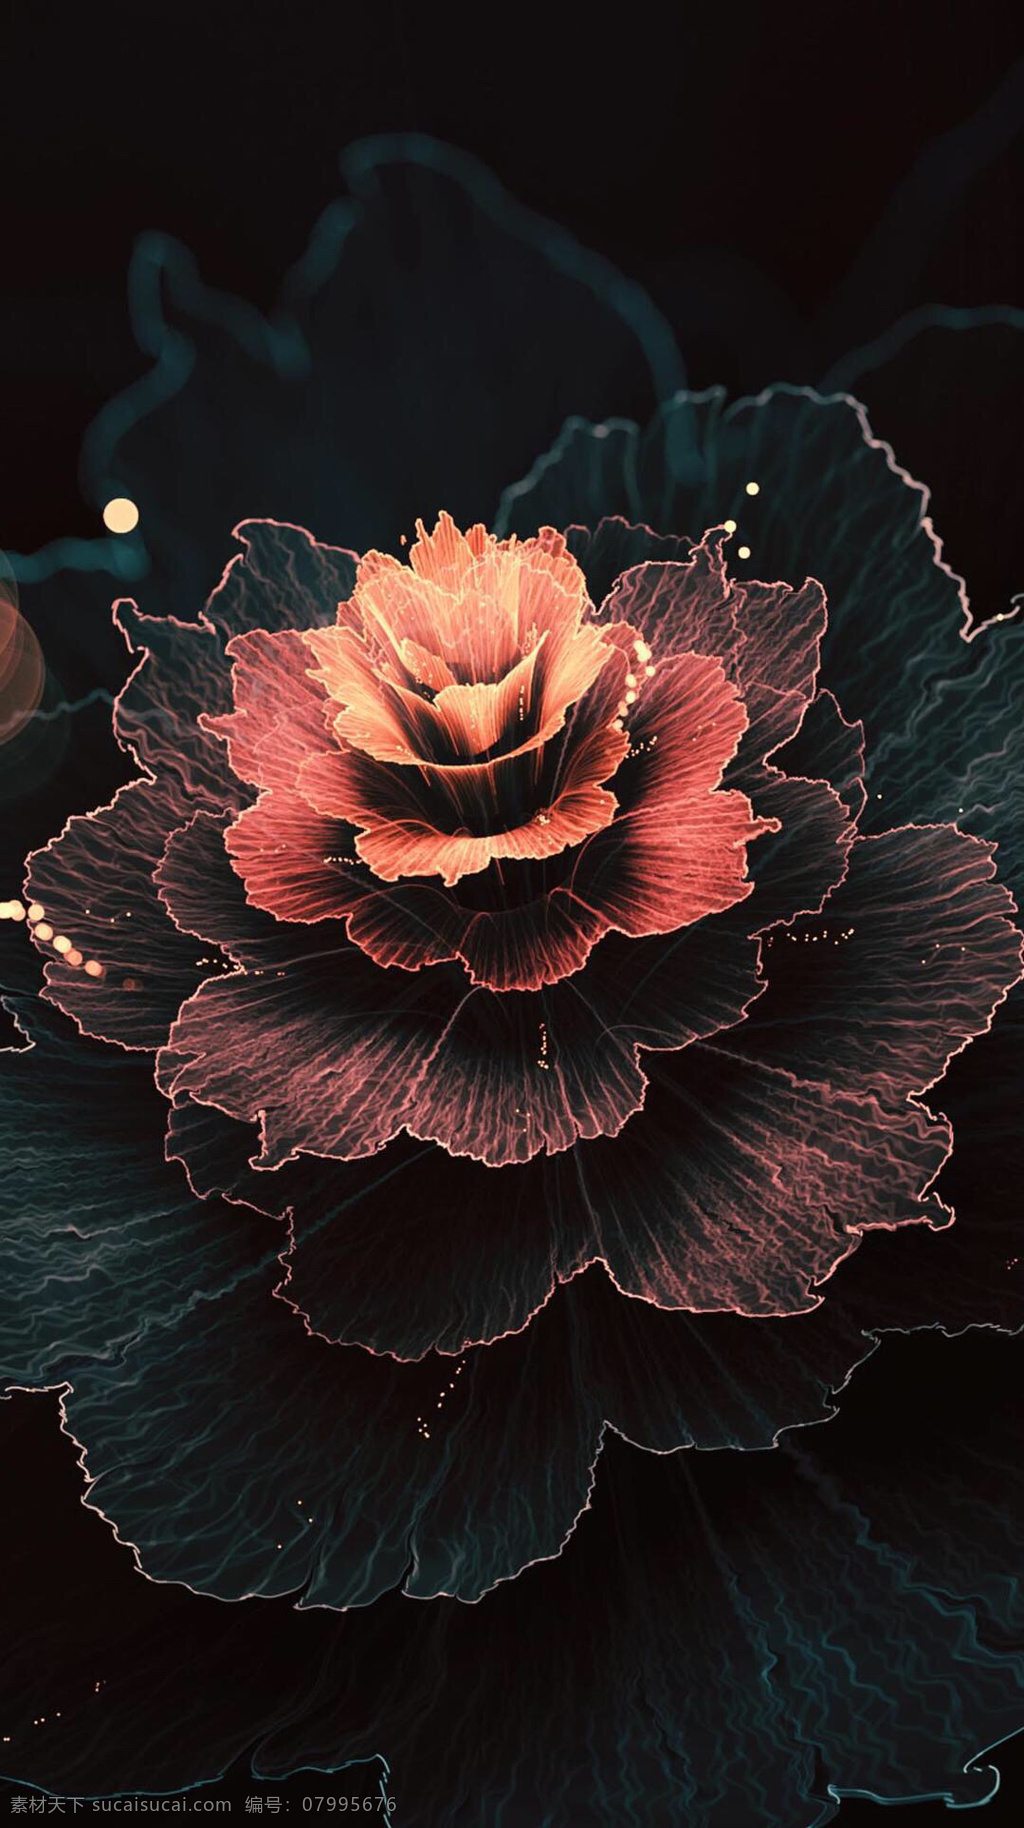 绽放 花图片 绽放的花 花 花朵 底纹 背景 质感 质感背景 质感底纹 红色 黑色 创意素材 广告